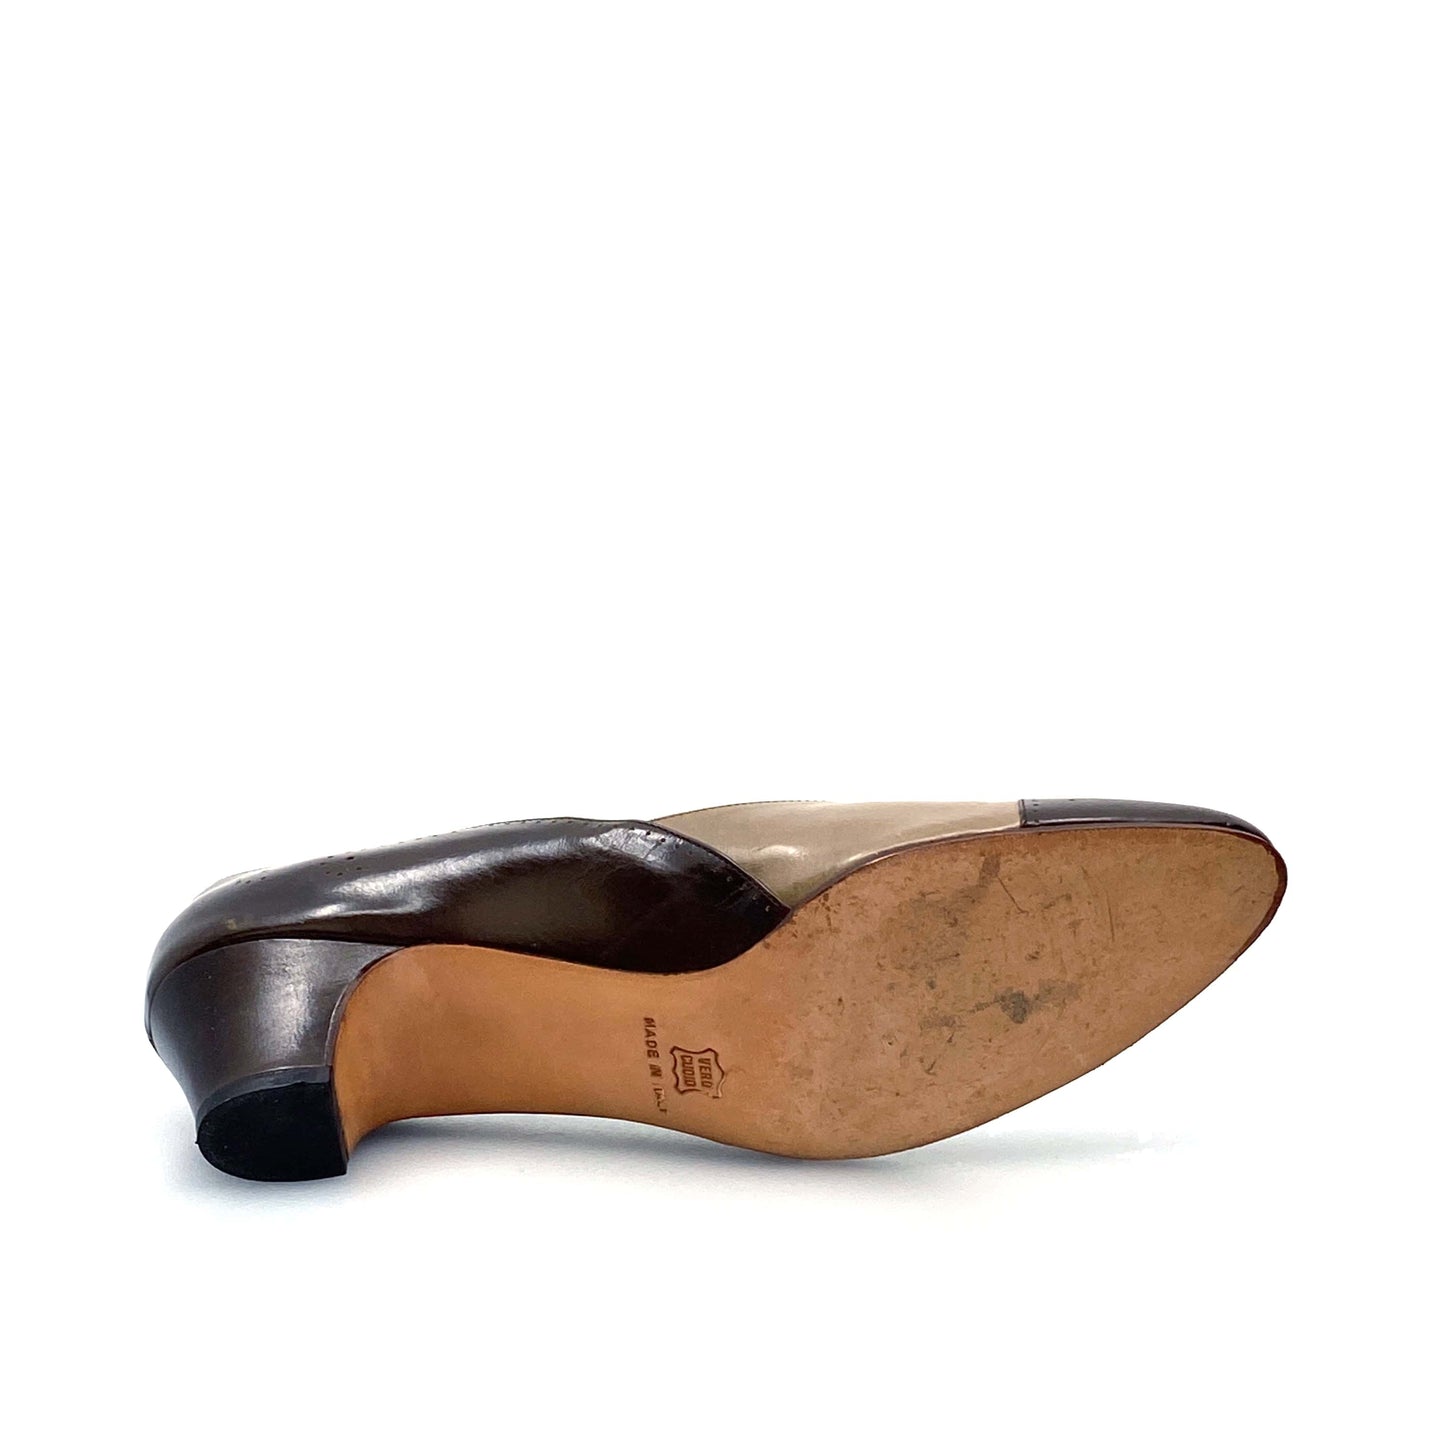 Salvatore Ferragamo Womens Brown Leather Heels Pumps Shoes 8 AAAA